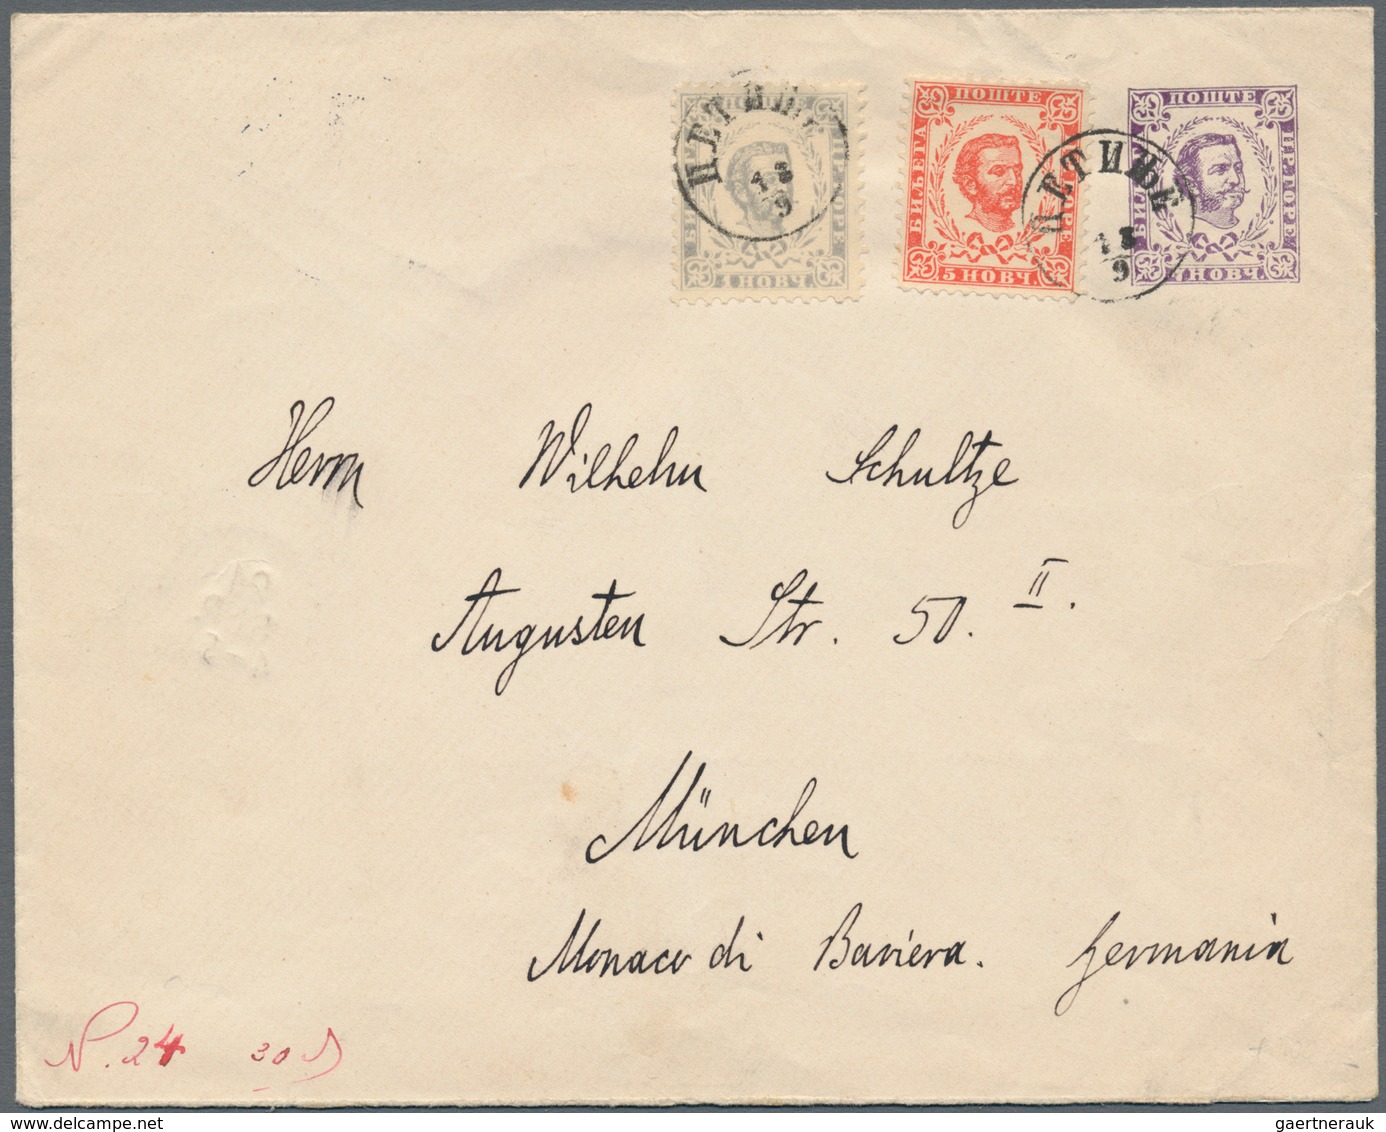 Montenegro: 1879/1945. spannende Partie mit fast nur besseren Stücken, Briefe, Ganzsachen, Postkarte